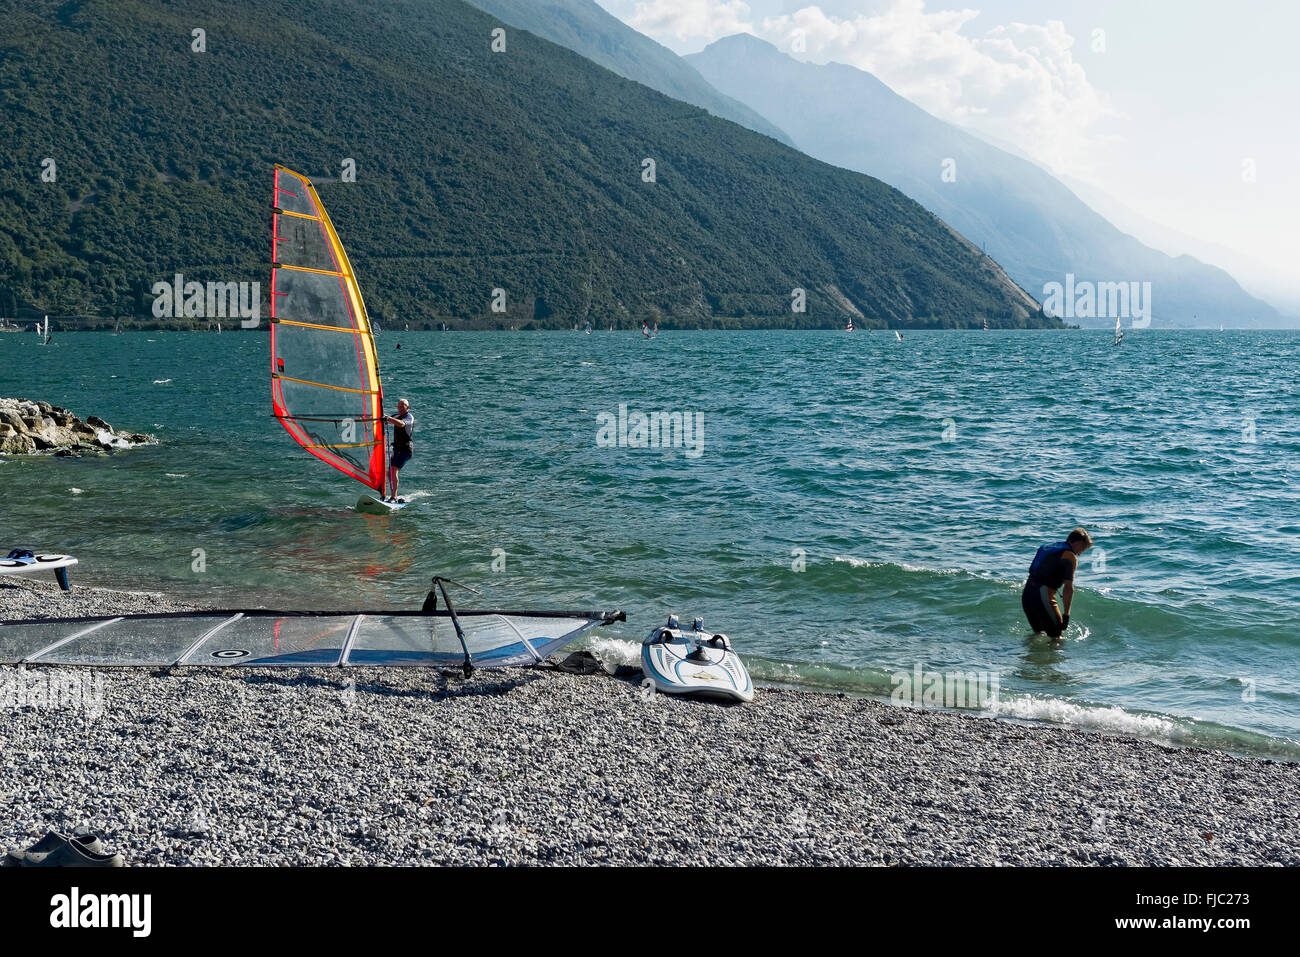 Strand, Windsurf, Torbole sul Garda, gardasee, Trentino, Italien | Spiaggia, wind surf, Torbole sul lago di Garda, Trentino, Italia Foto Stock